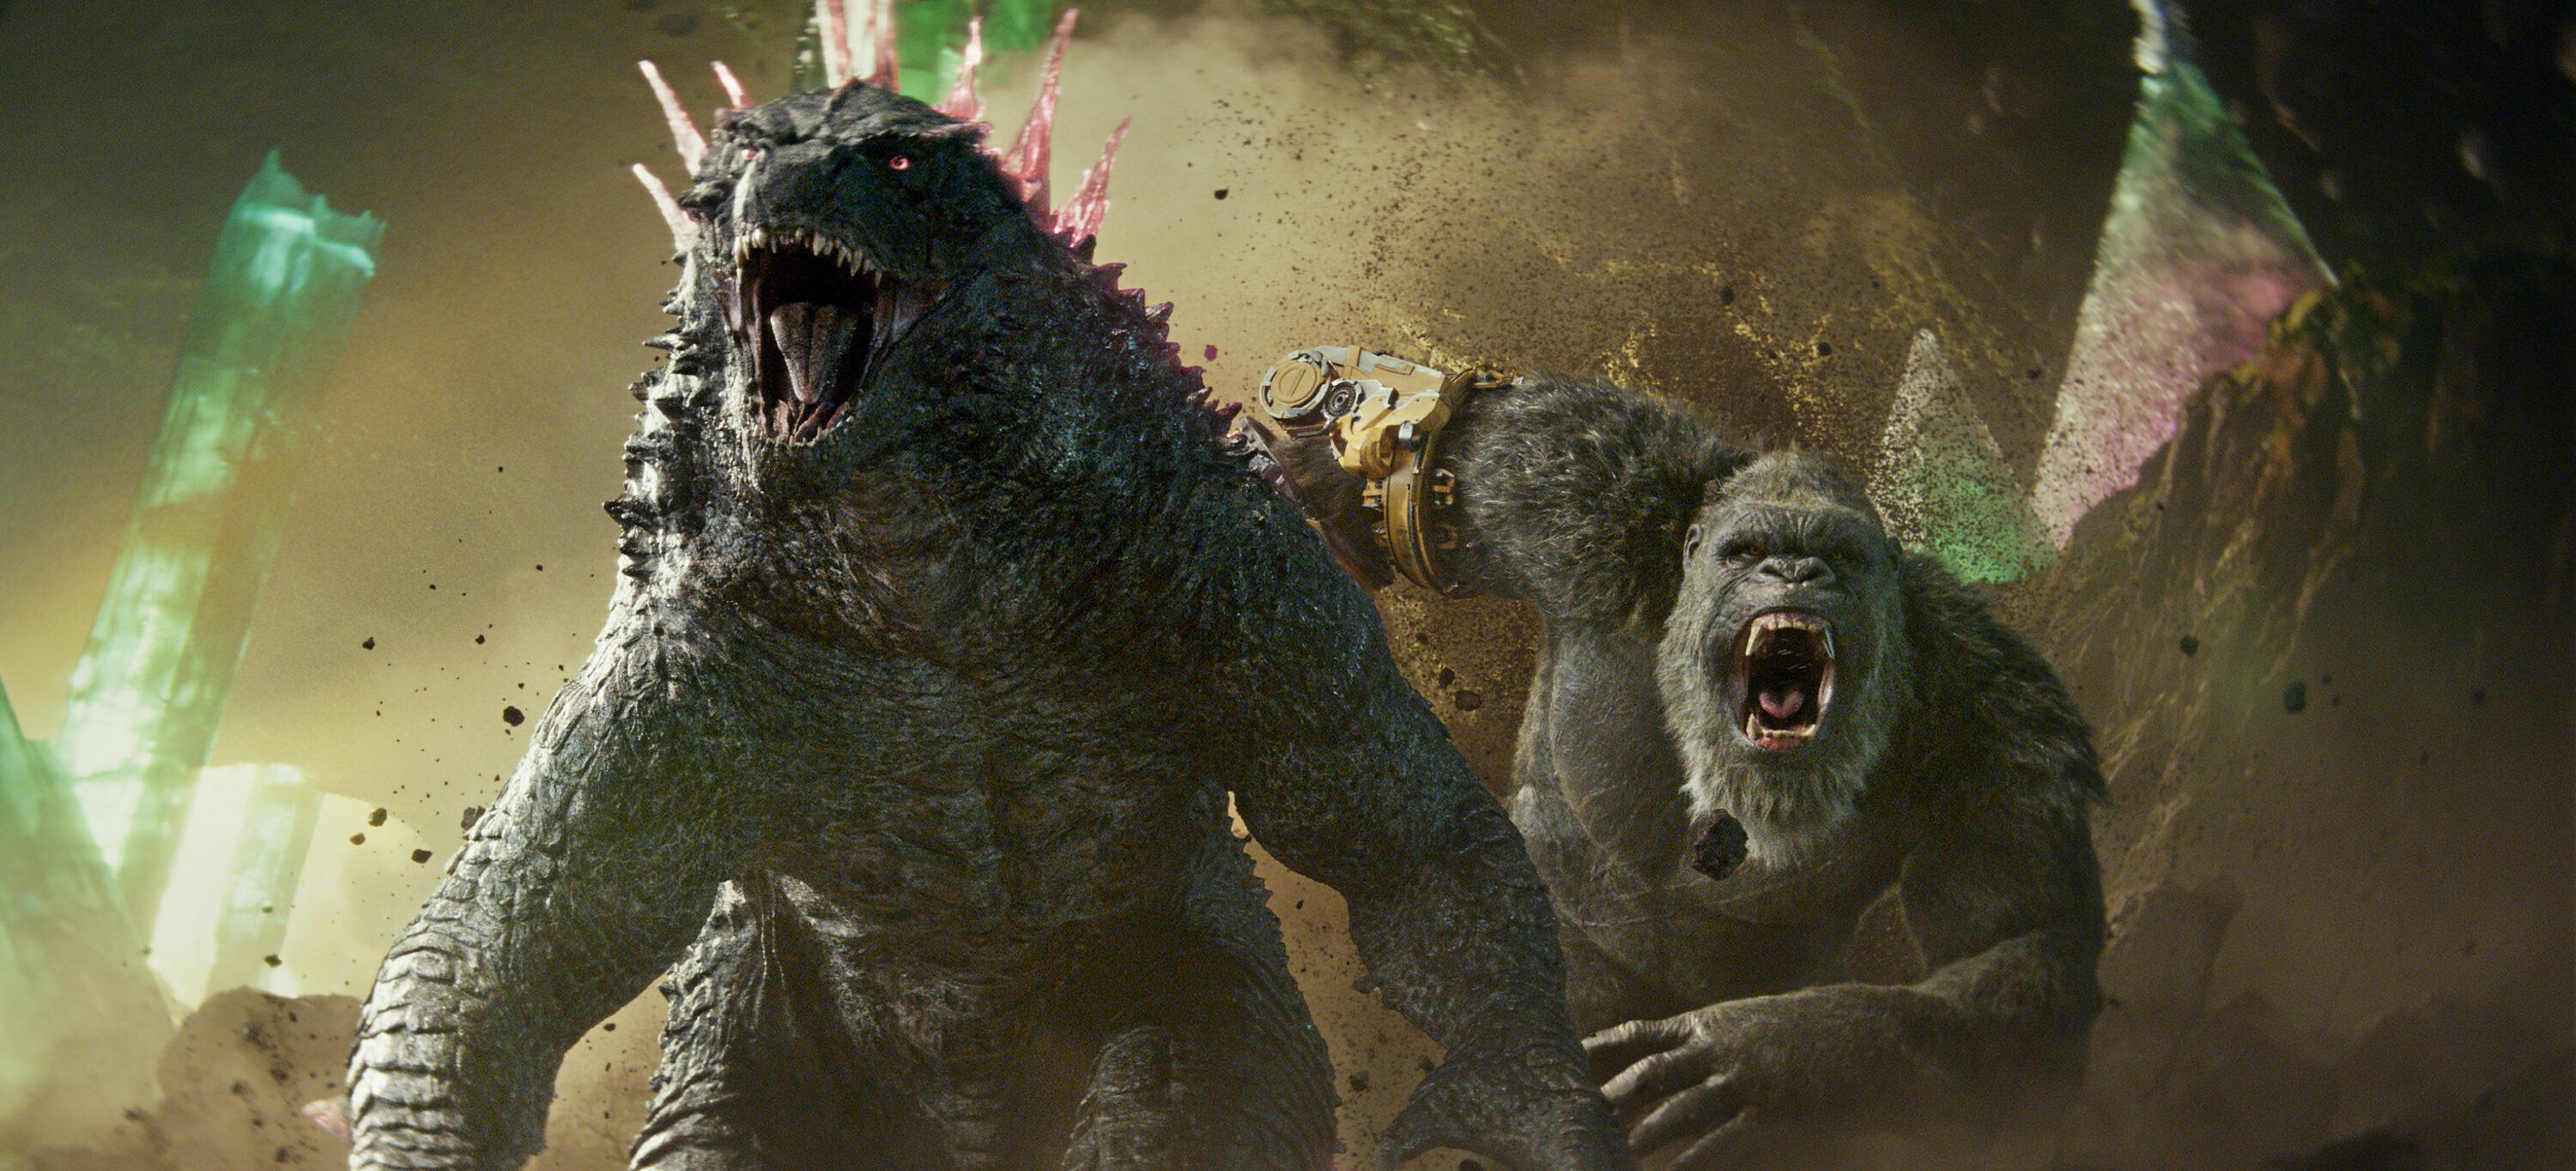 Godzilla e Kong lutam no Rio de Janeiro em novo trailer de O Novo Império